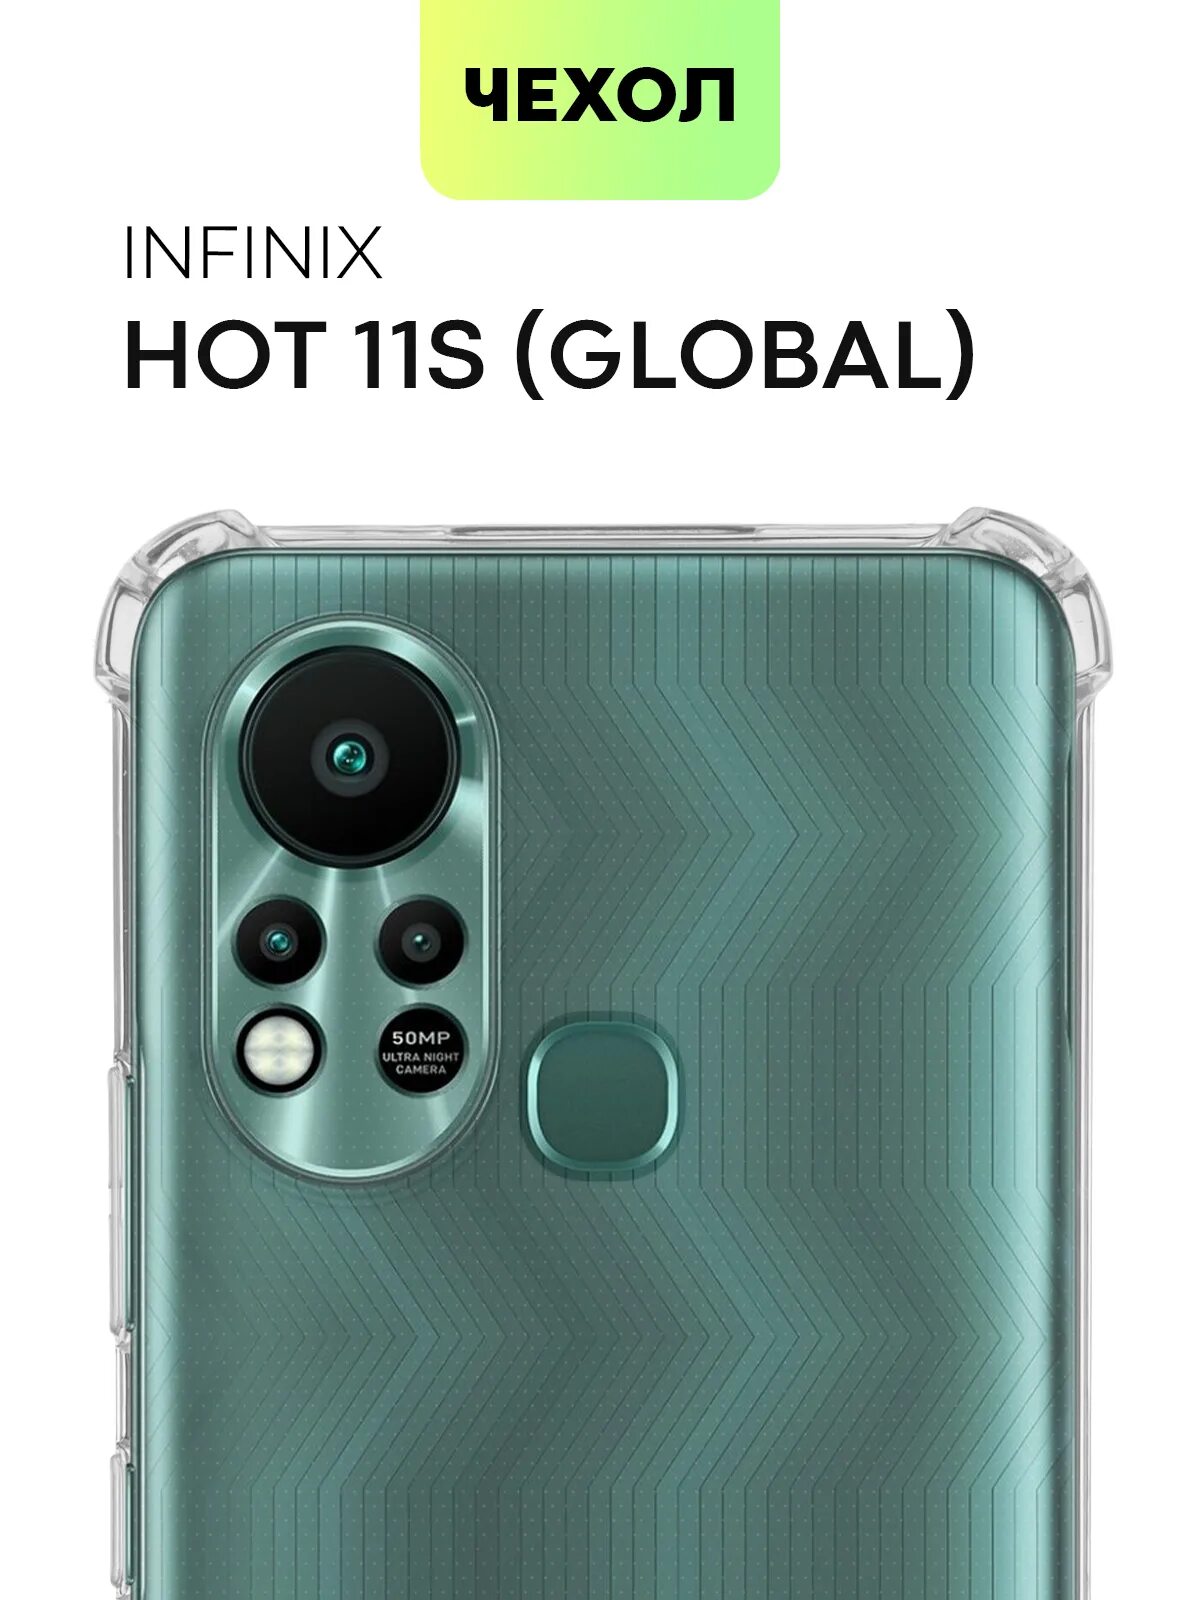 Чехол на телефон Infinix hot 11 s. Infinix hot 11s. Infinix hot 11s NFC чехол. Инфиникс хот 11 s NFC. Телефон hot 11